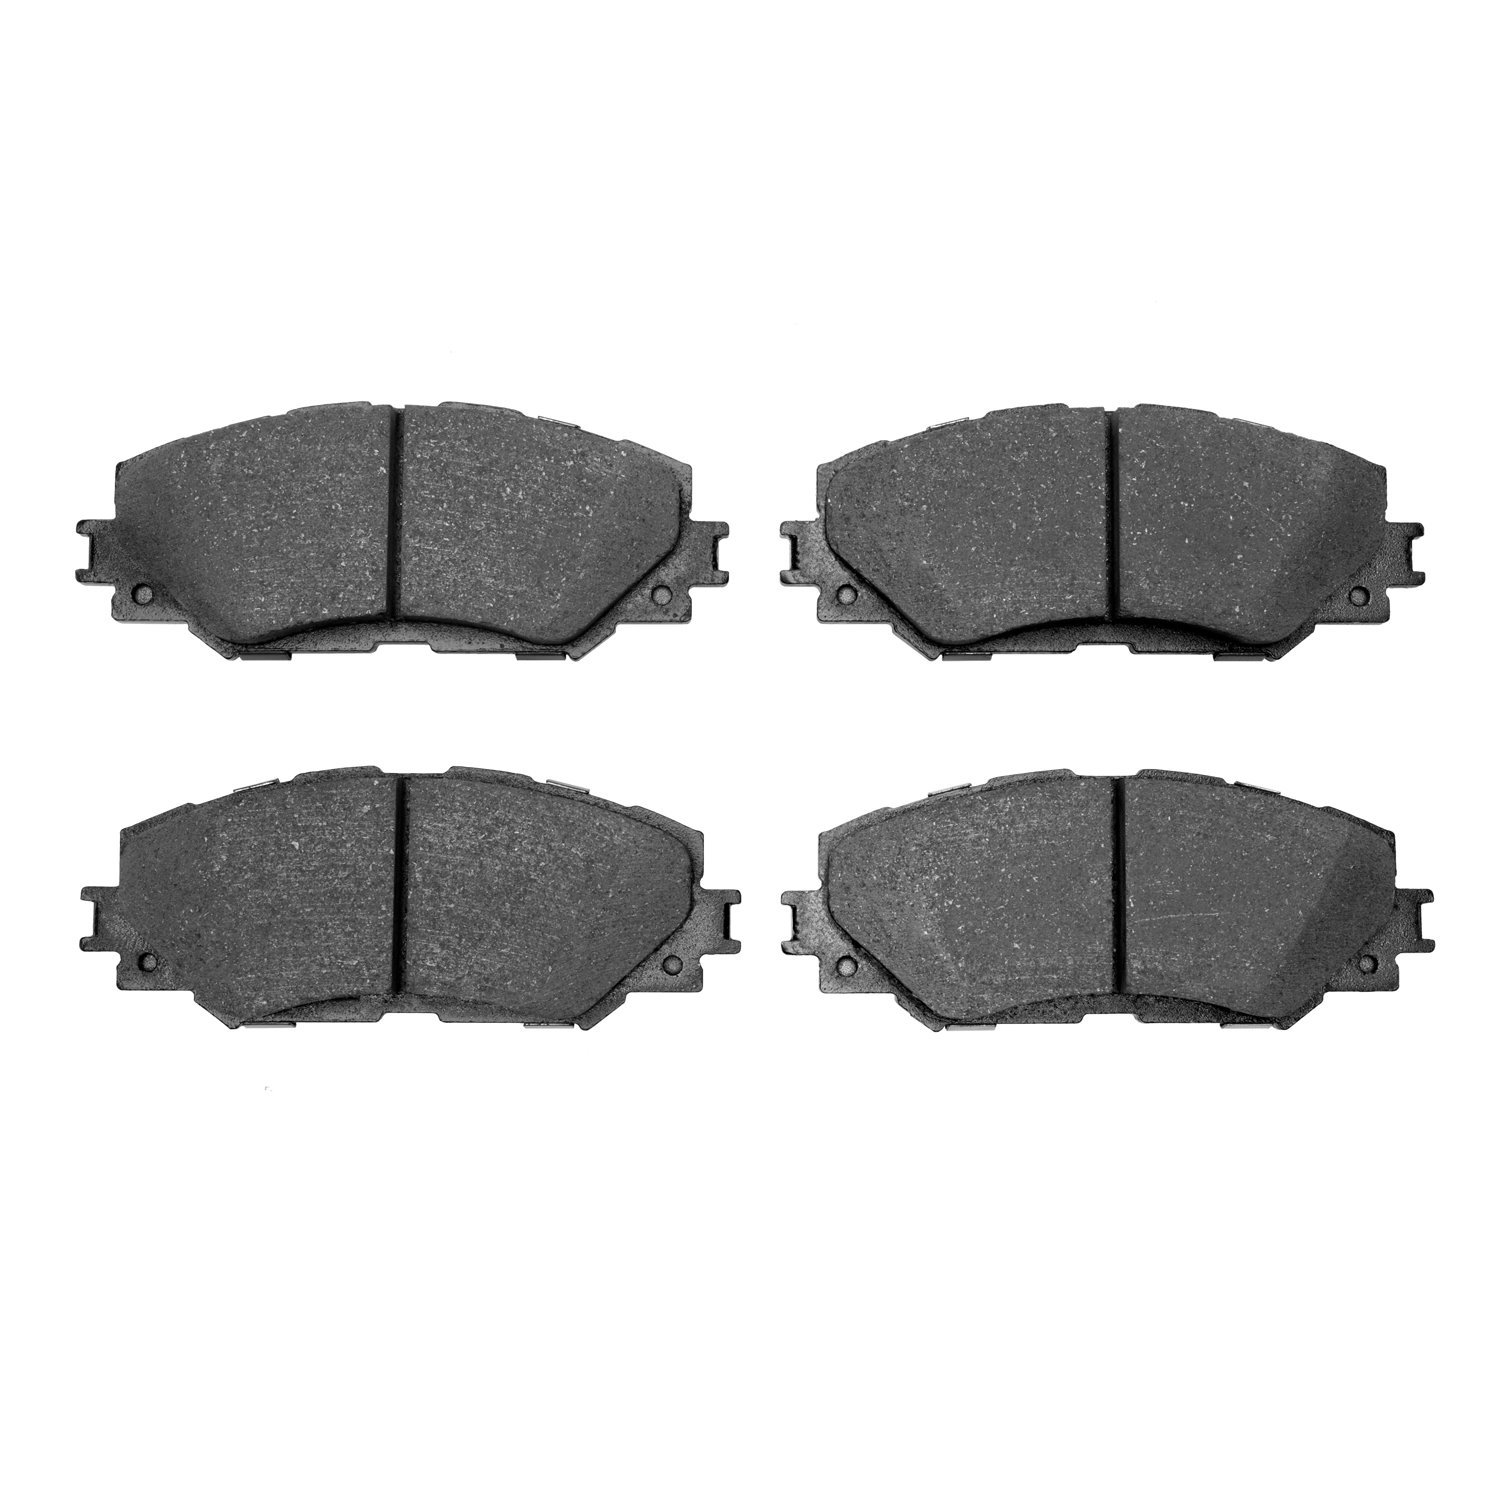 Ceramic Brake Pads, 2006-2019 Fits Multiple Makes/Models, Position: Front